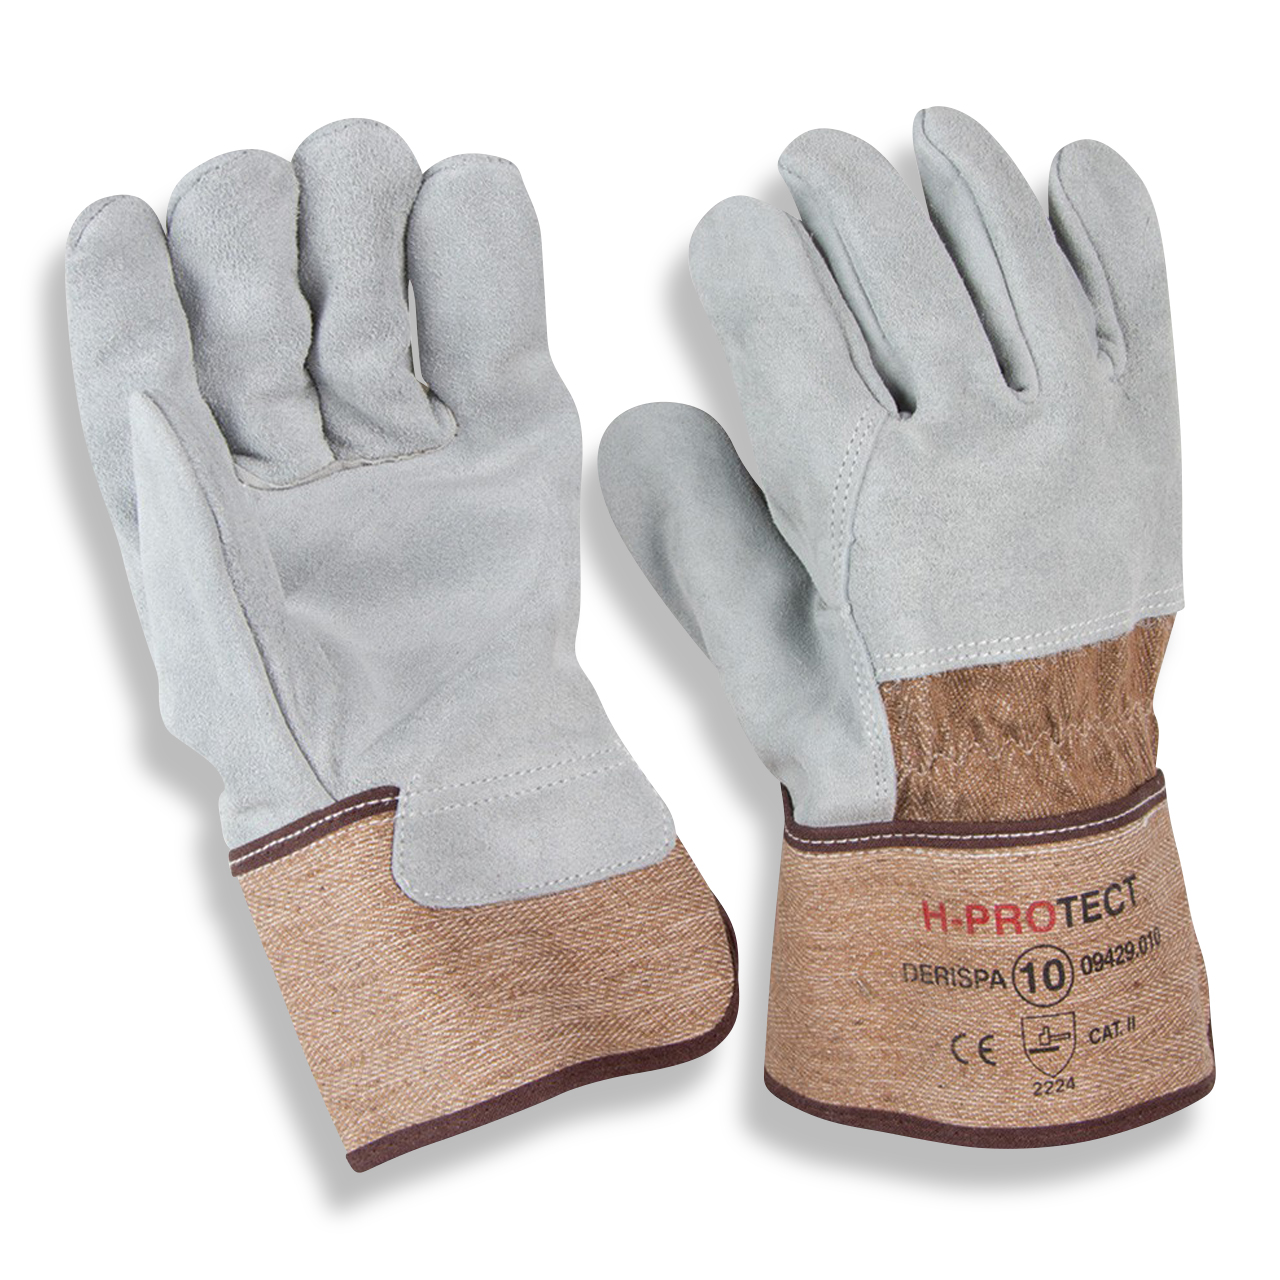 Leder-Handschuh H-Protect Derispa Gr. 10